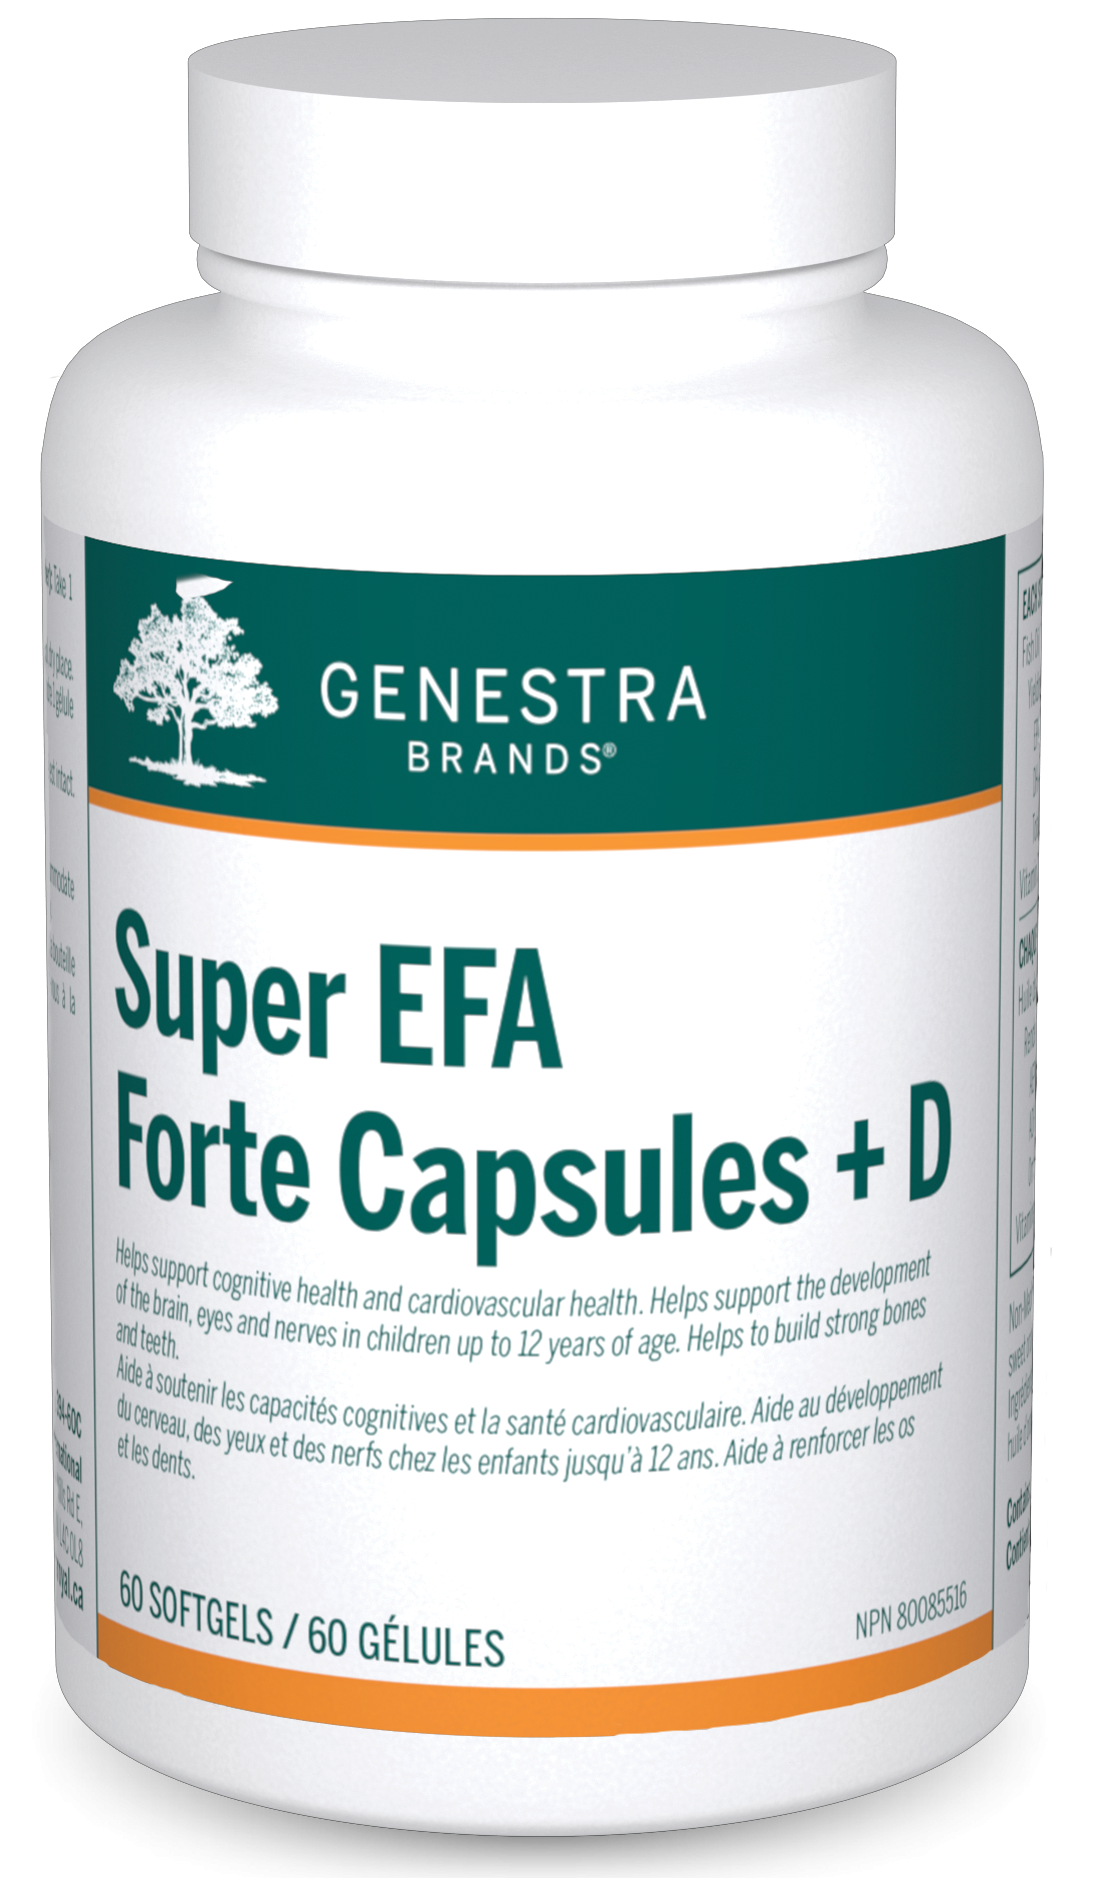 Super EFA Forte Capsules + D